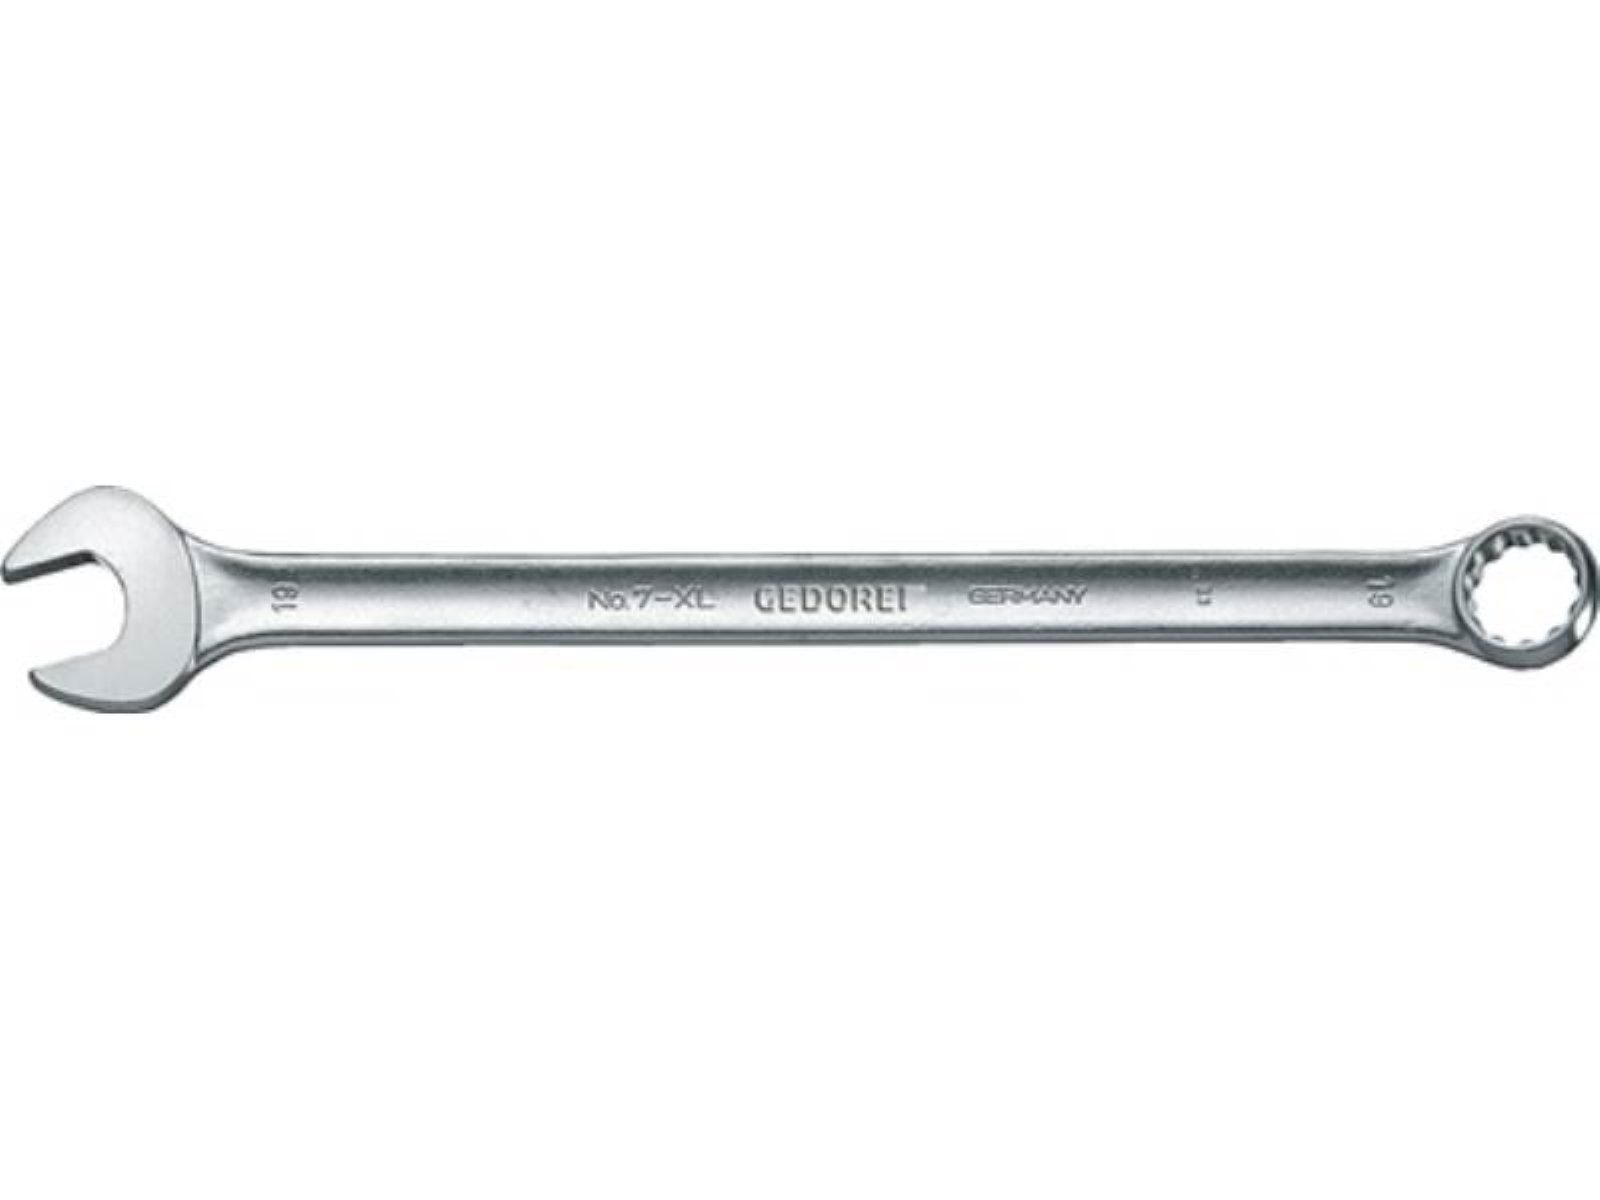 Gedore Maulschlüssel Ringmaulschlüssel 7 XL SW 11mm L.200mm Form A ext.lang CV-Stahl GEDOR